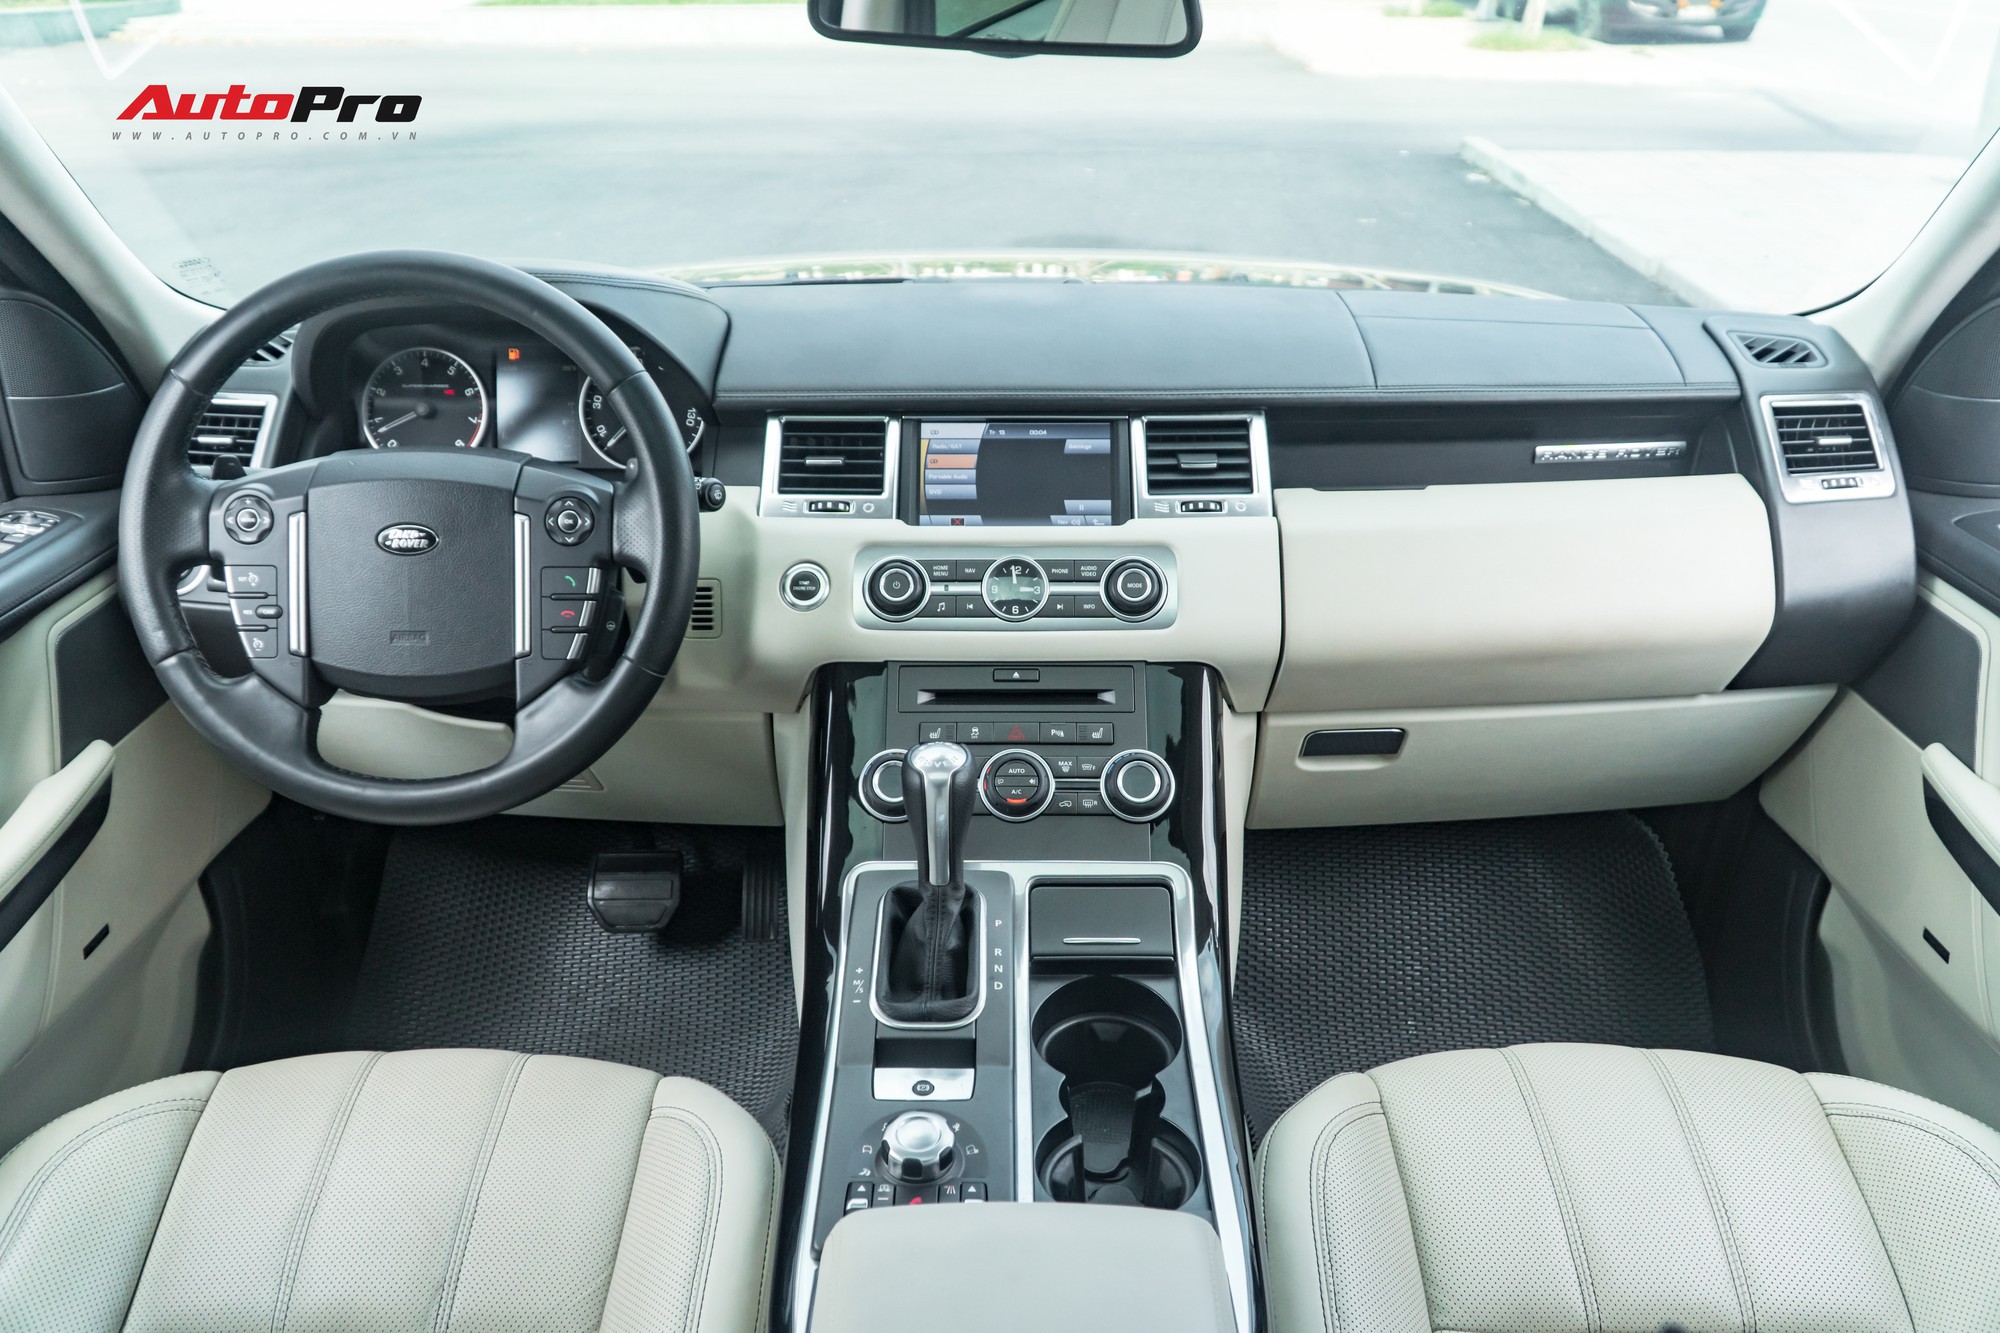 Range Rover Sport 2010 được biết đến là chiếc SUV hiệu suất cao, hấp dẫn và linh hoạt. Với tính năng và thiết kế tiên tiến cùng khả năng vận hành tuyệt vời, xe đã chiếm được trái tim của rất nhiều tín đồ xe hơi. Hãy xem ảnh để thấy được sự sáng tạo và cống hiến của Land Rover.